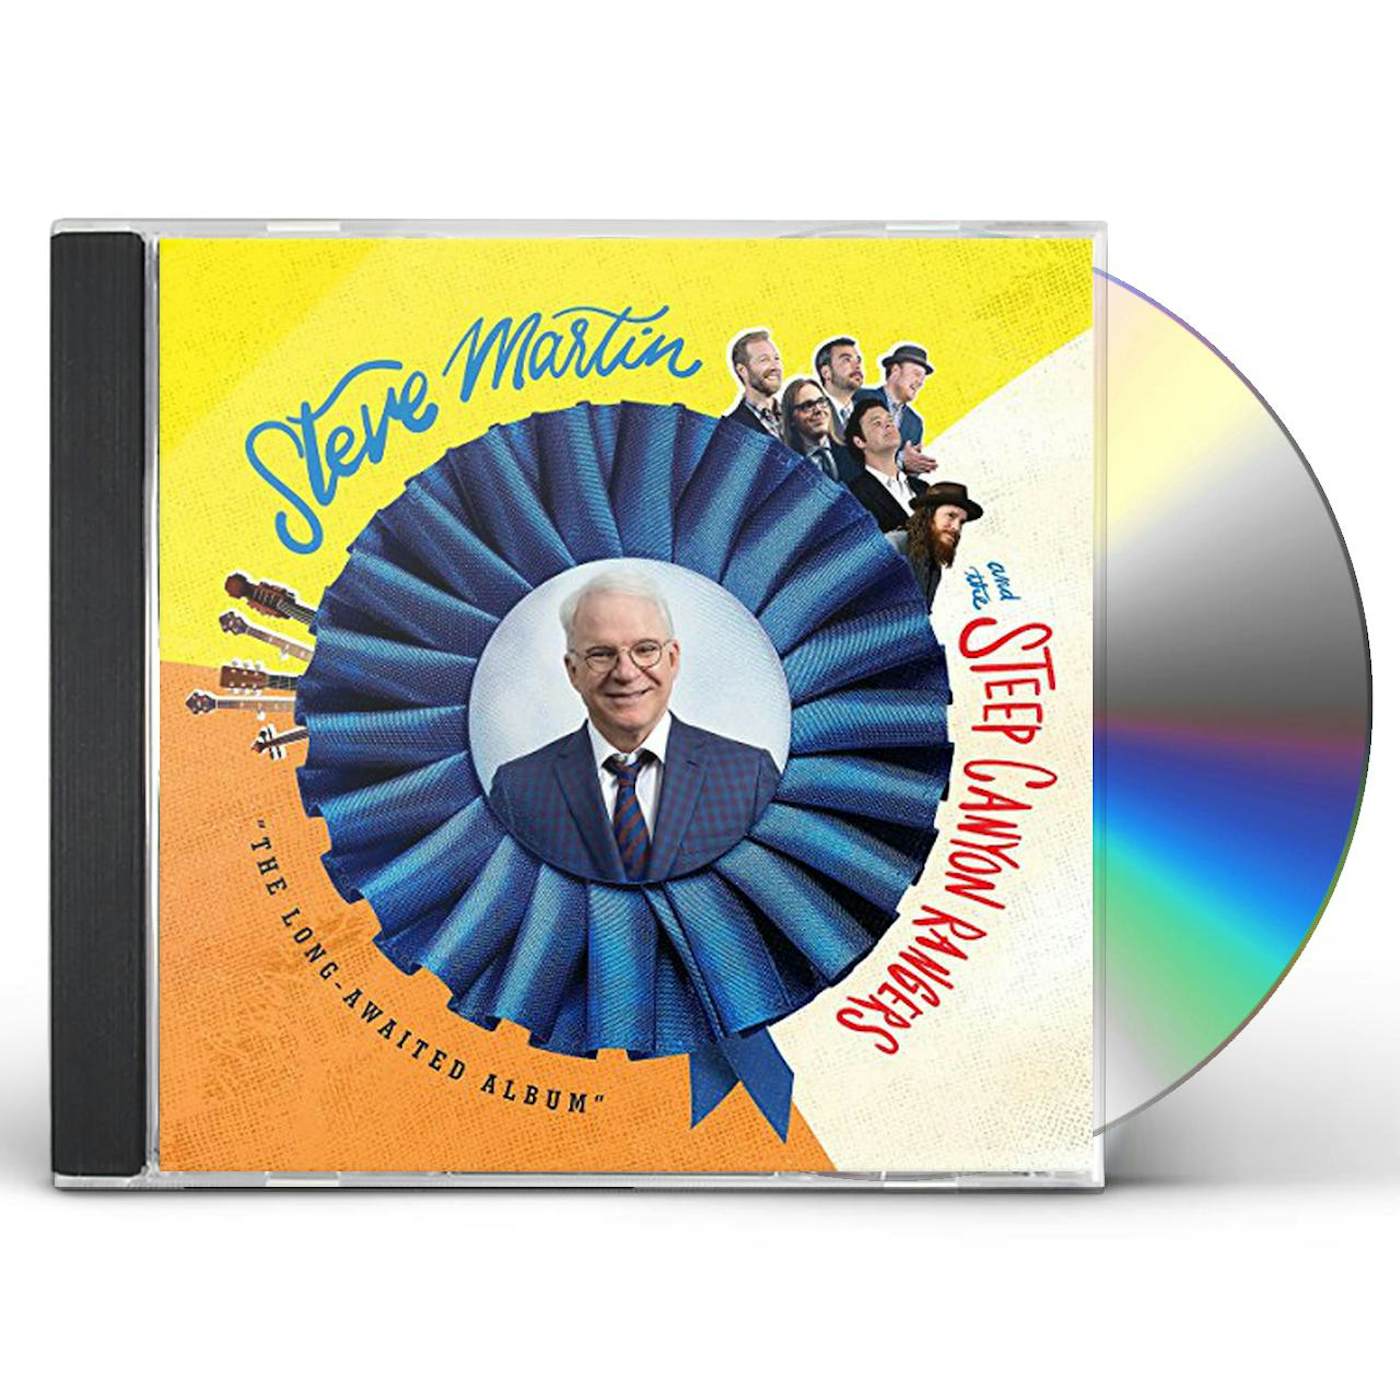 Steve Martin LONG-AWAITED ALBUM CD